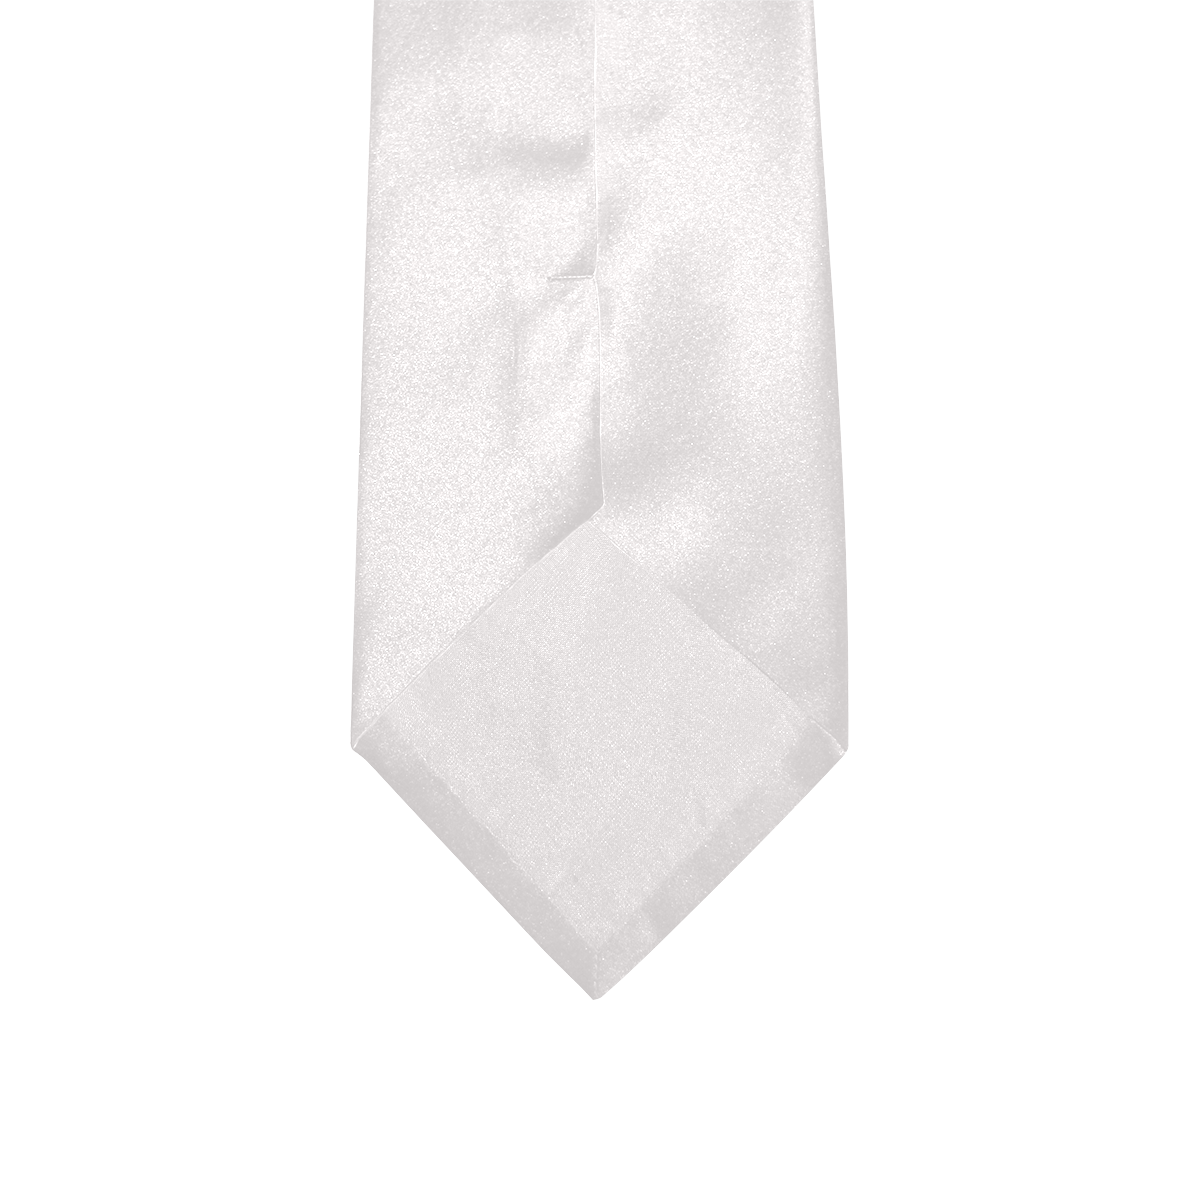 Custom Peekaboo Tie with Hidden Picture